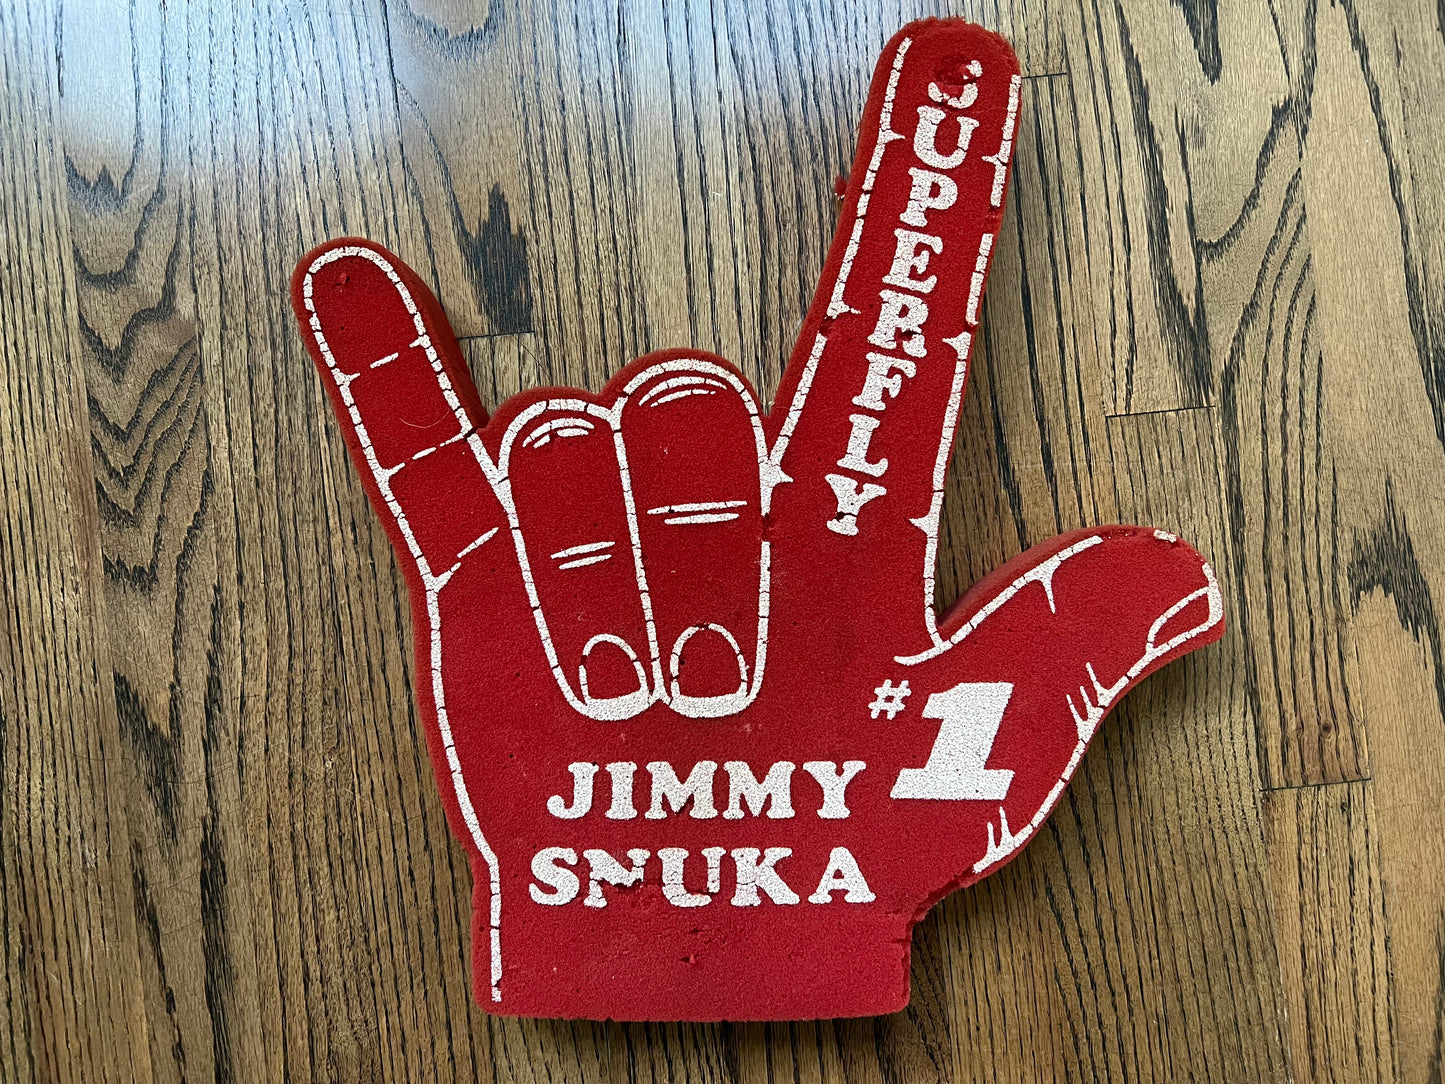 1984 WWF Jimmy “SUPERFLY” Snuka foam hand